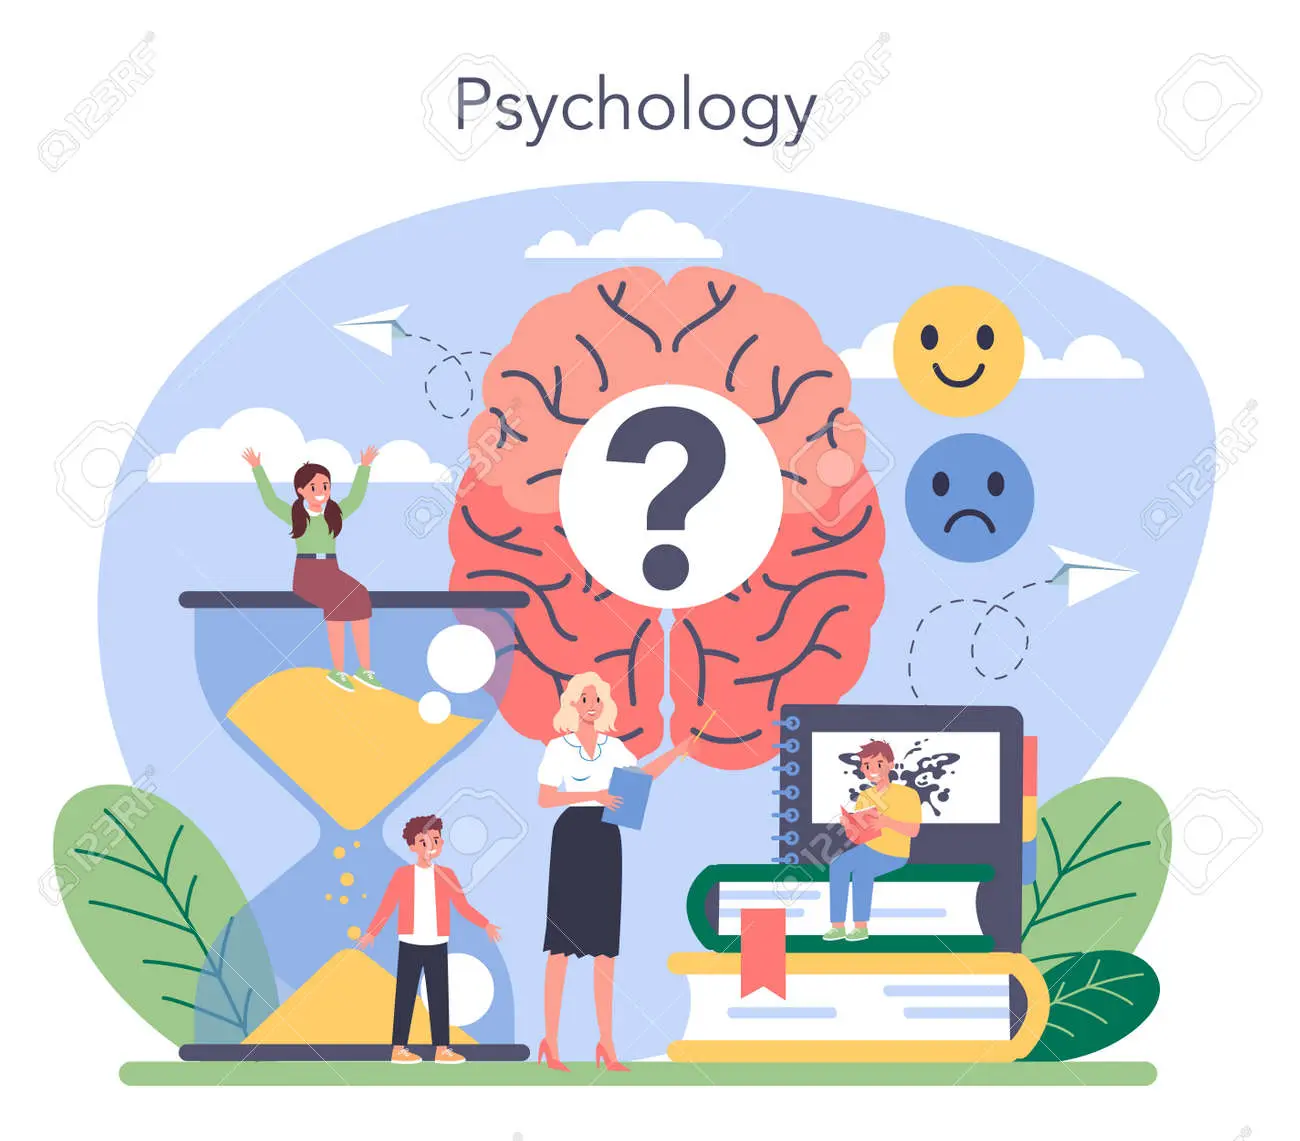 concepcion de psicologia - Cómo se concibe la psicología